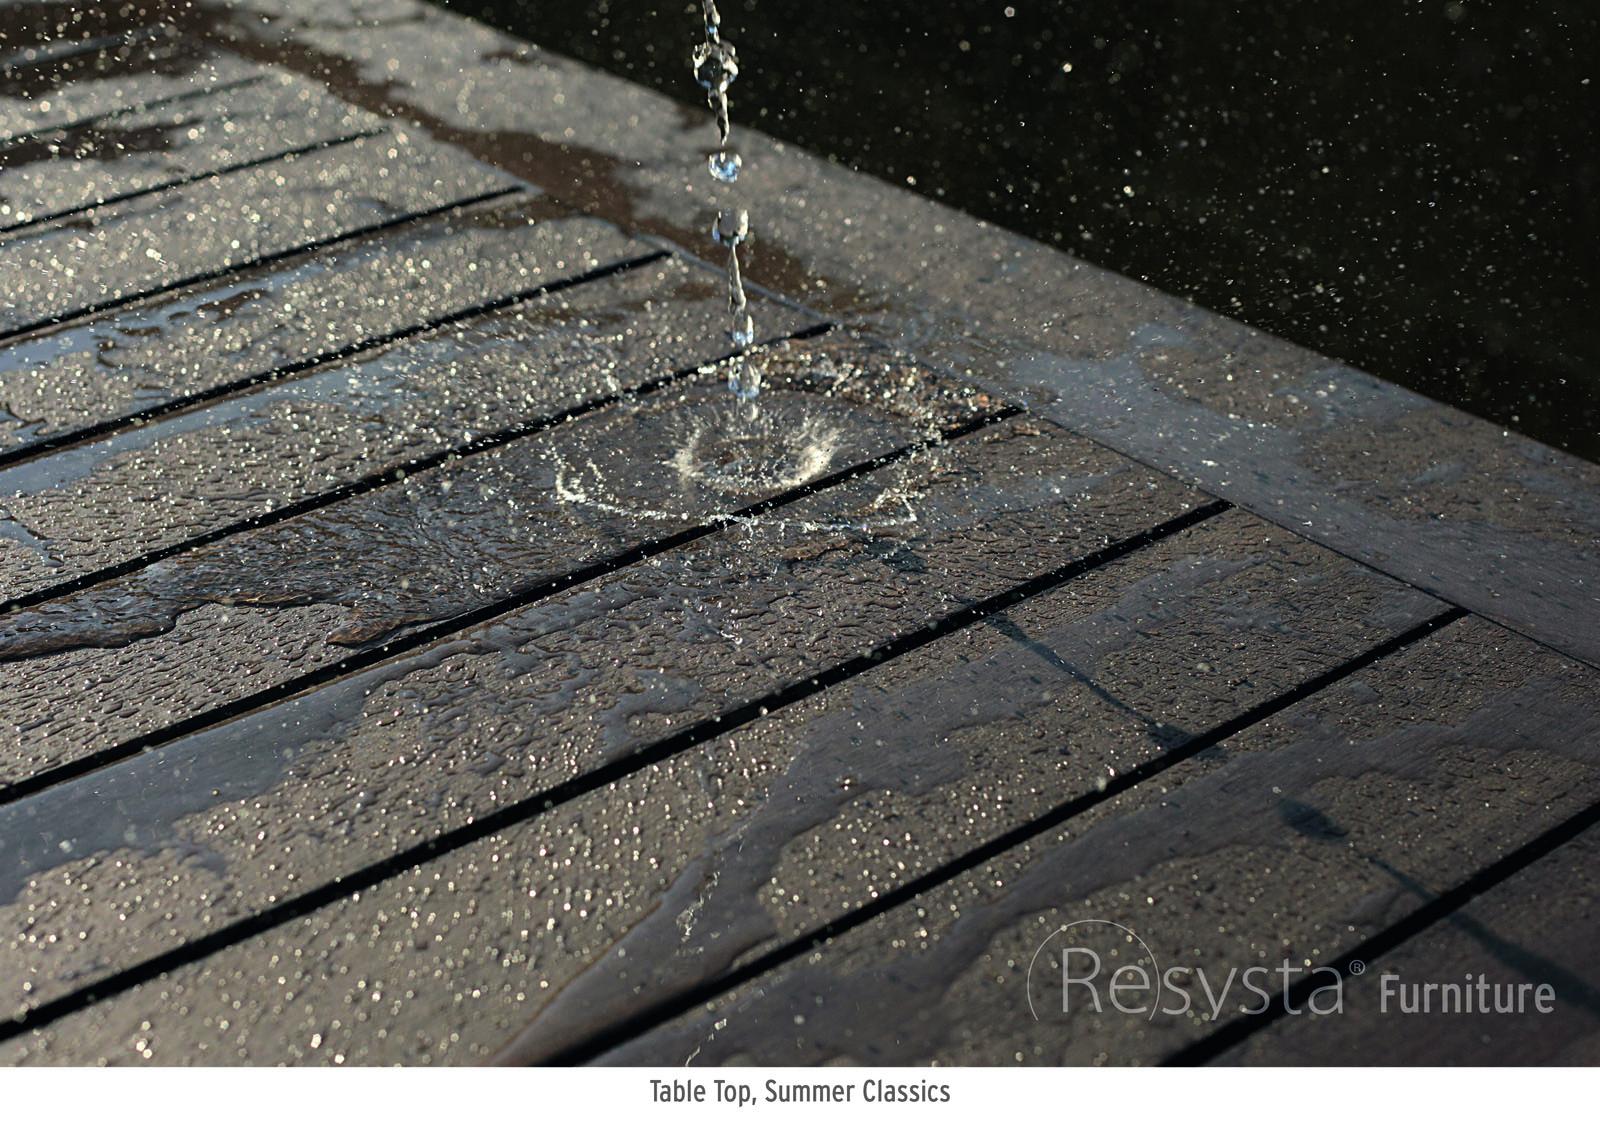 Resysta-waterproof-laminates.jpg